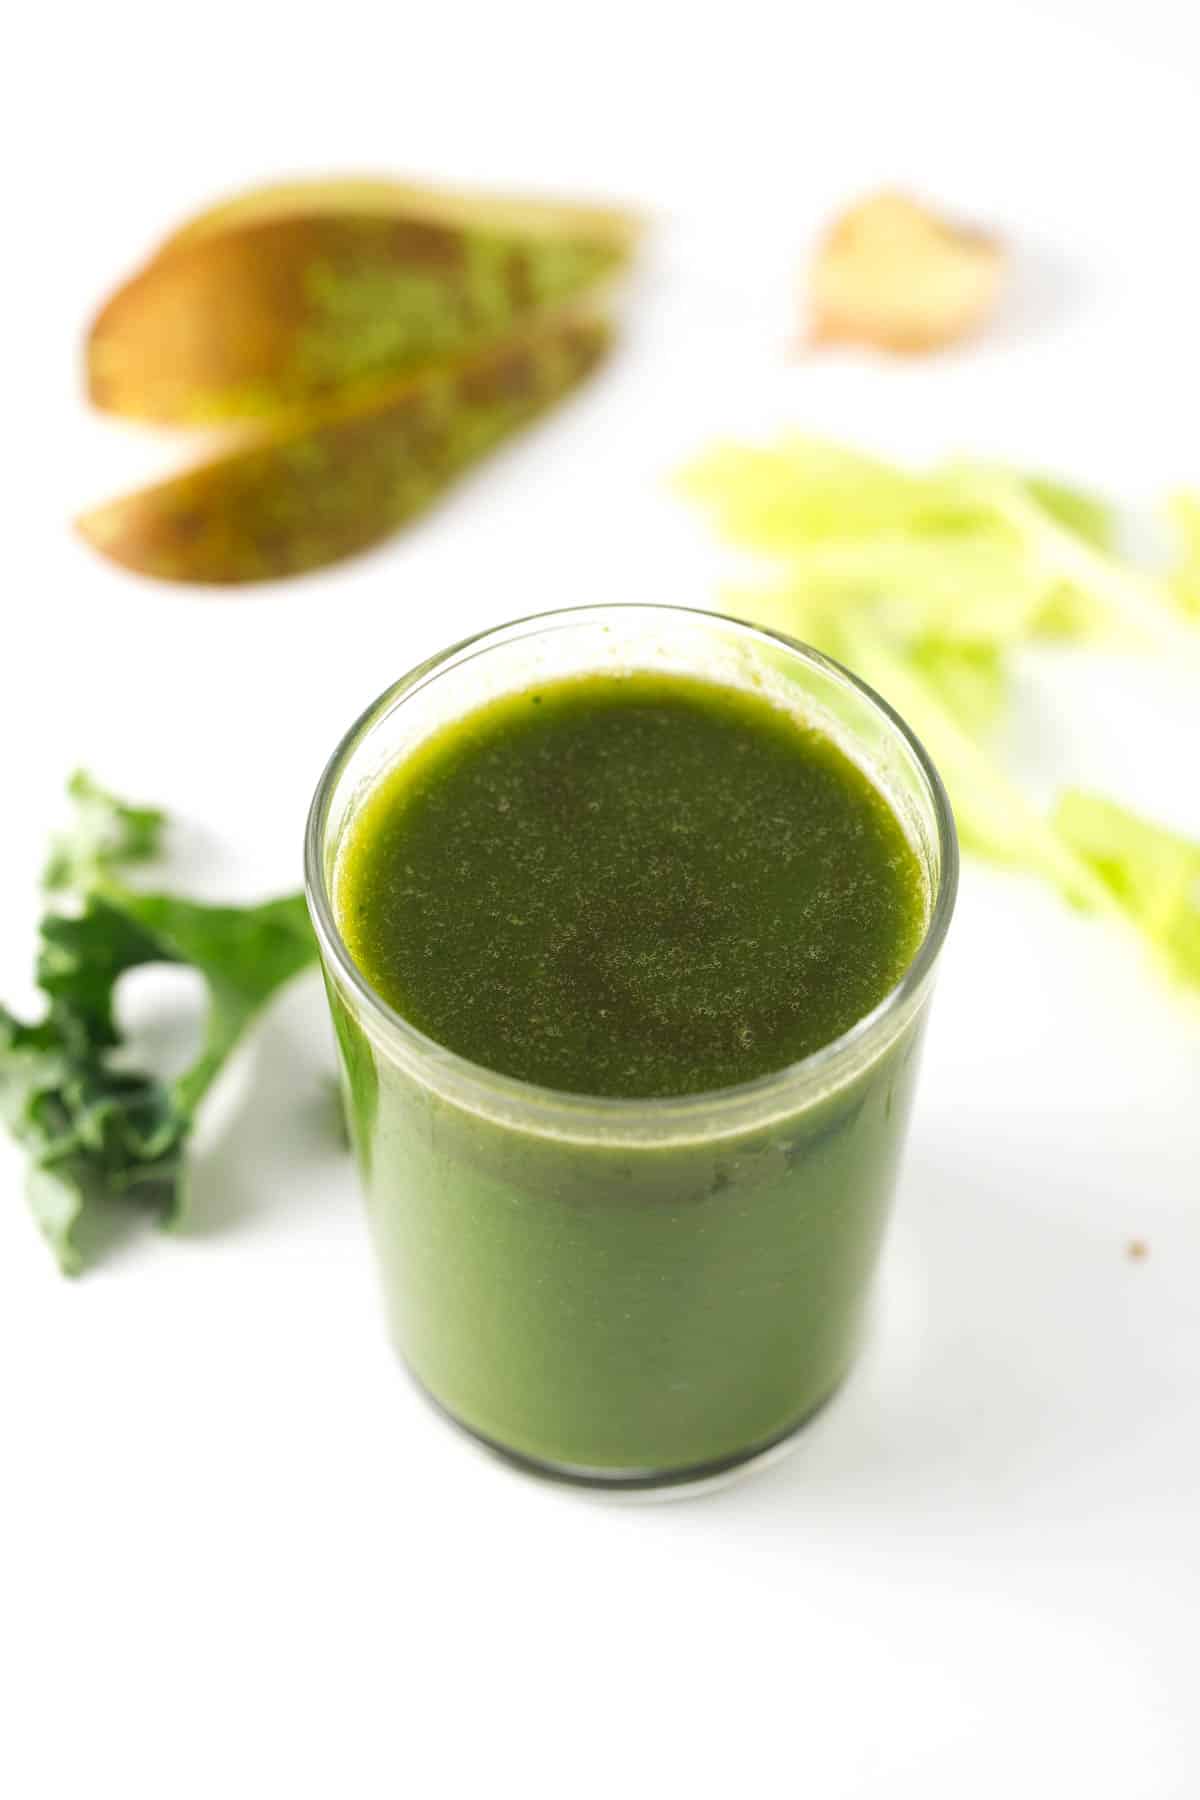 Zumo o jugo verde para mejorar la digestión - Este zumo o jugo verde es perfecto para favorecer o mejorar la digestión. Además, el jengibre nos ayudará a despertarnos por las mañanas.